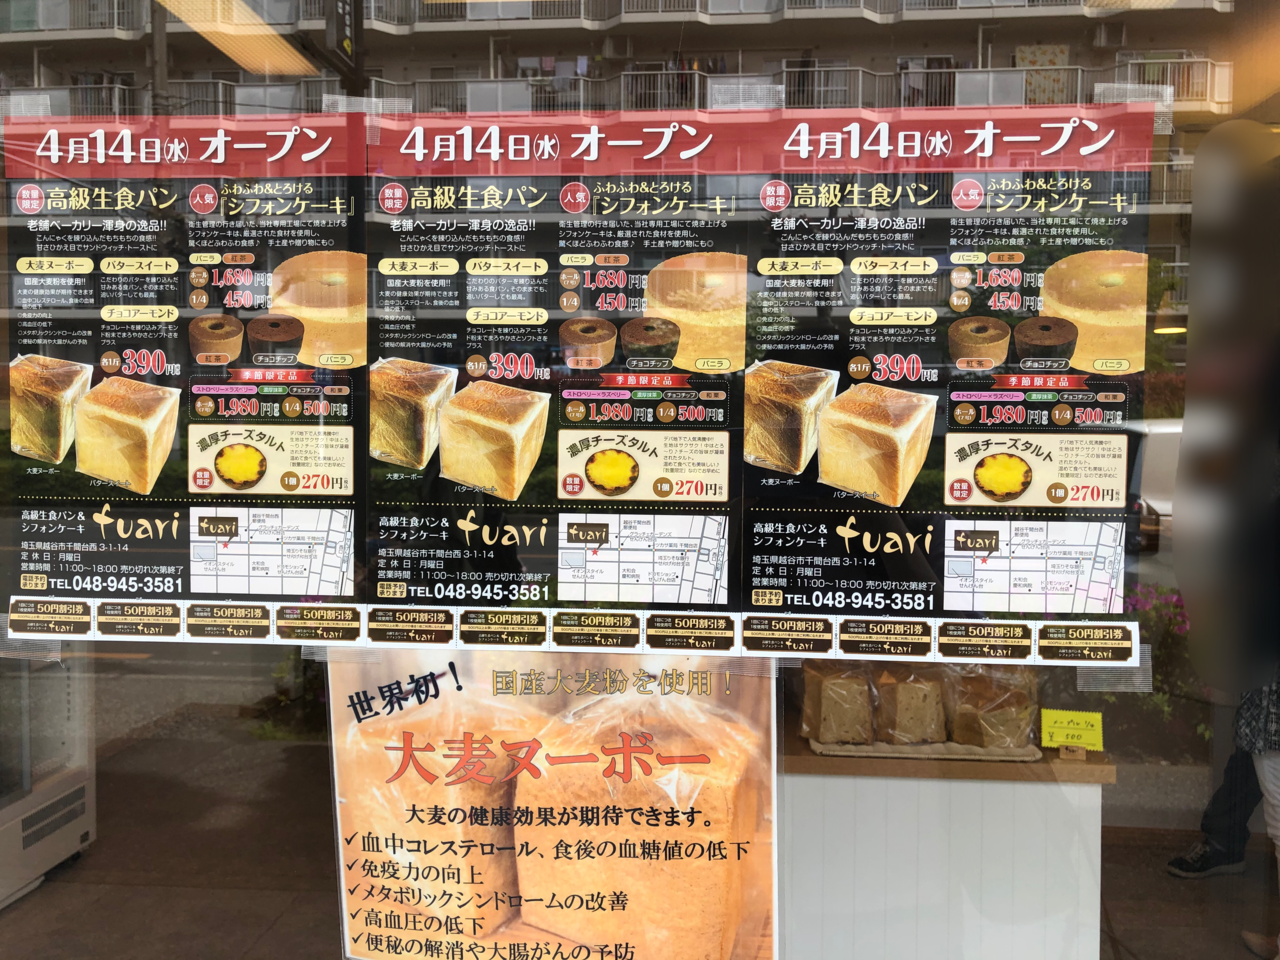 越谷市 大人気間違い無し 高級生食パン シフォンケーキ Fuari がオープンしました 号外net 越谷市